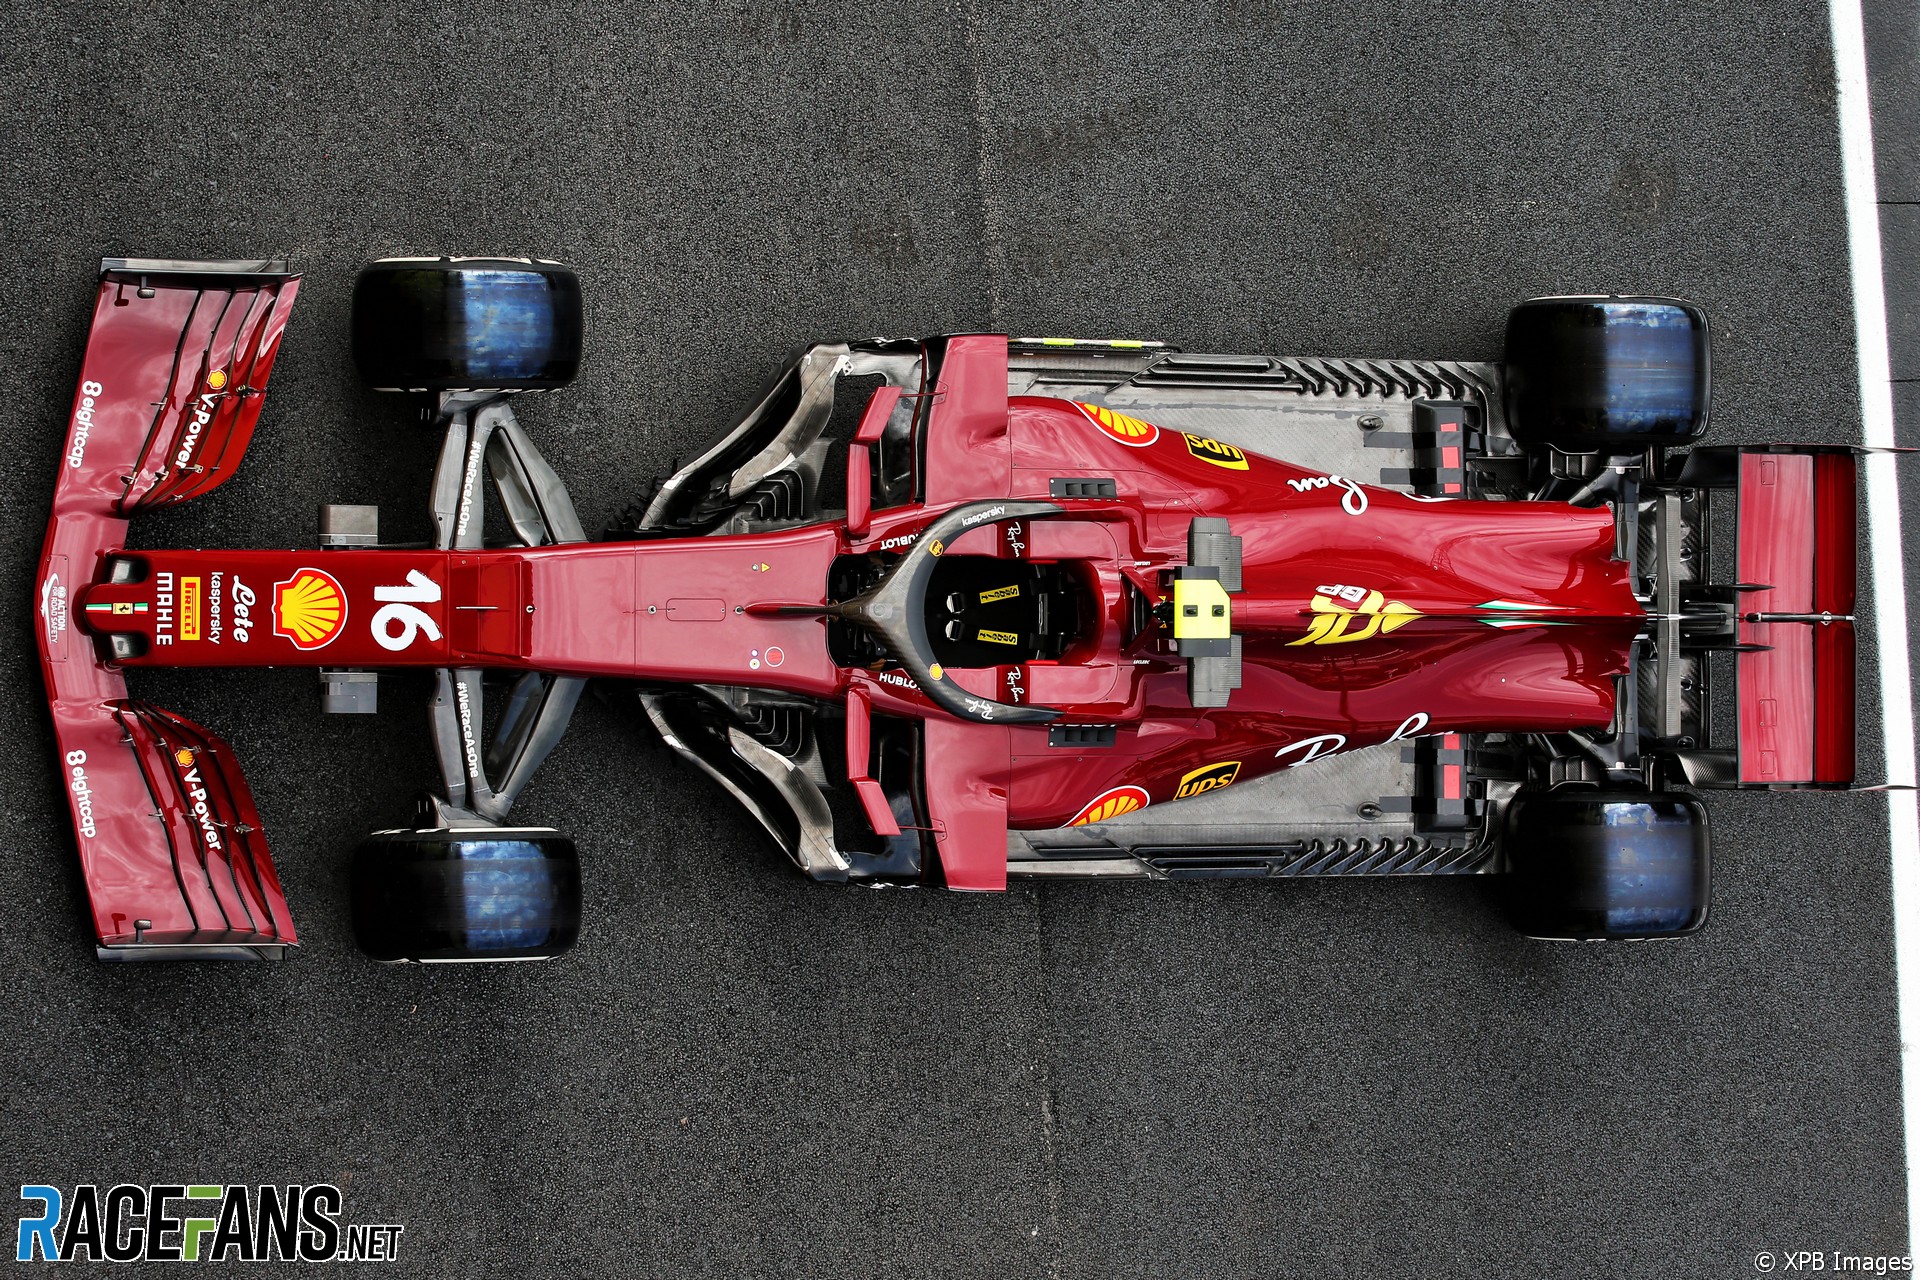 The Mugello version Ferrari F1.